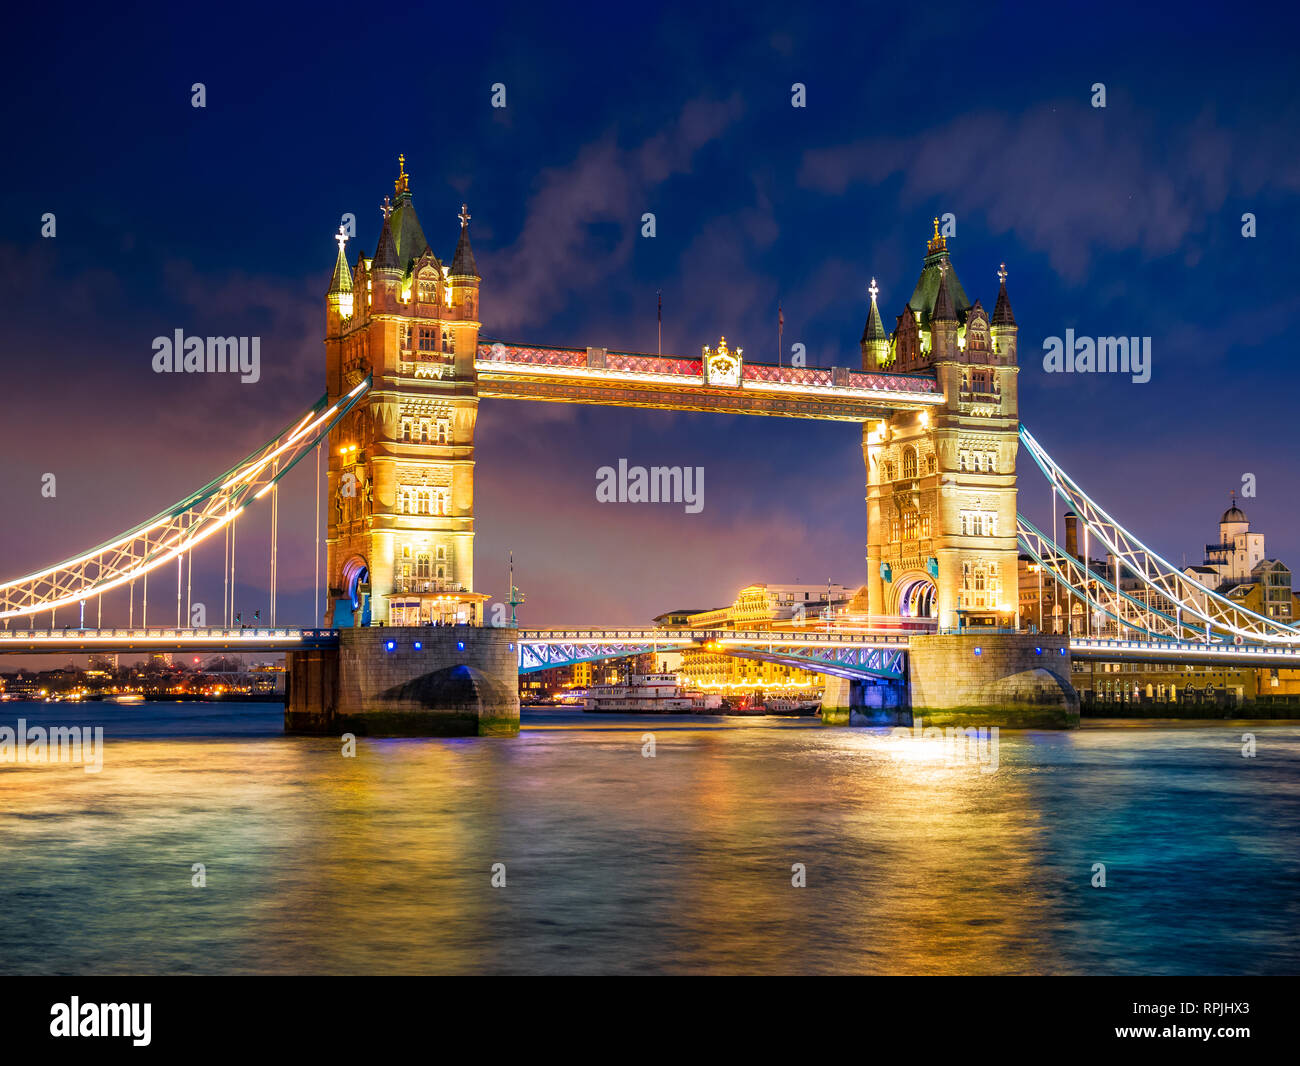 Belle scène nocturne avec le célèbre Tower Bridge de Londres illuminé et reflété dans la Tamise en Angleterre, Royaume-Uni Banque D'Images